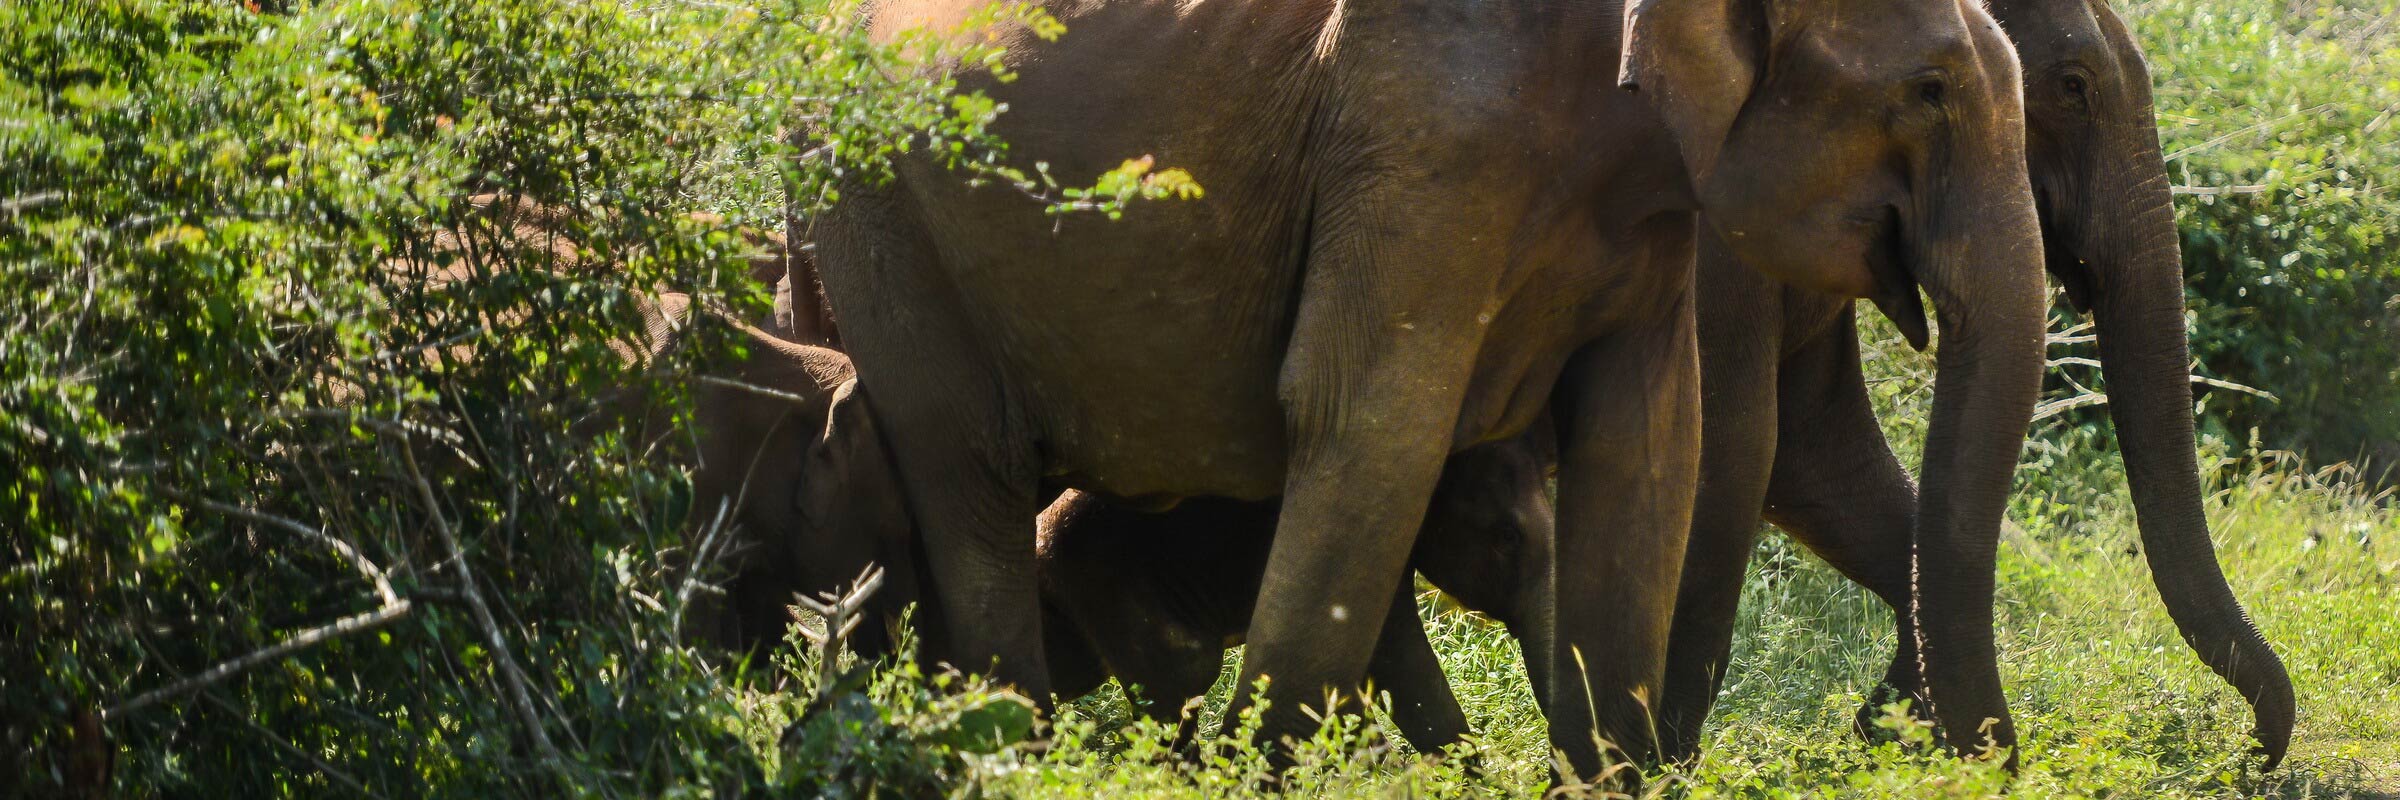 Der Nagarhole Nationalpark ist ein Schutzgebiet im südindischen Bundesstaat Karnataka, in dem Elefanten in freier Wildbahn beobachtet werden können.